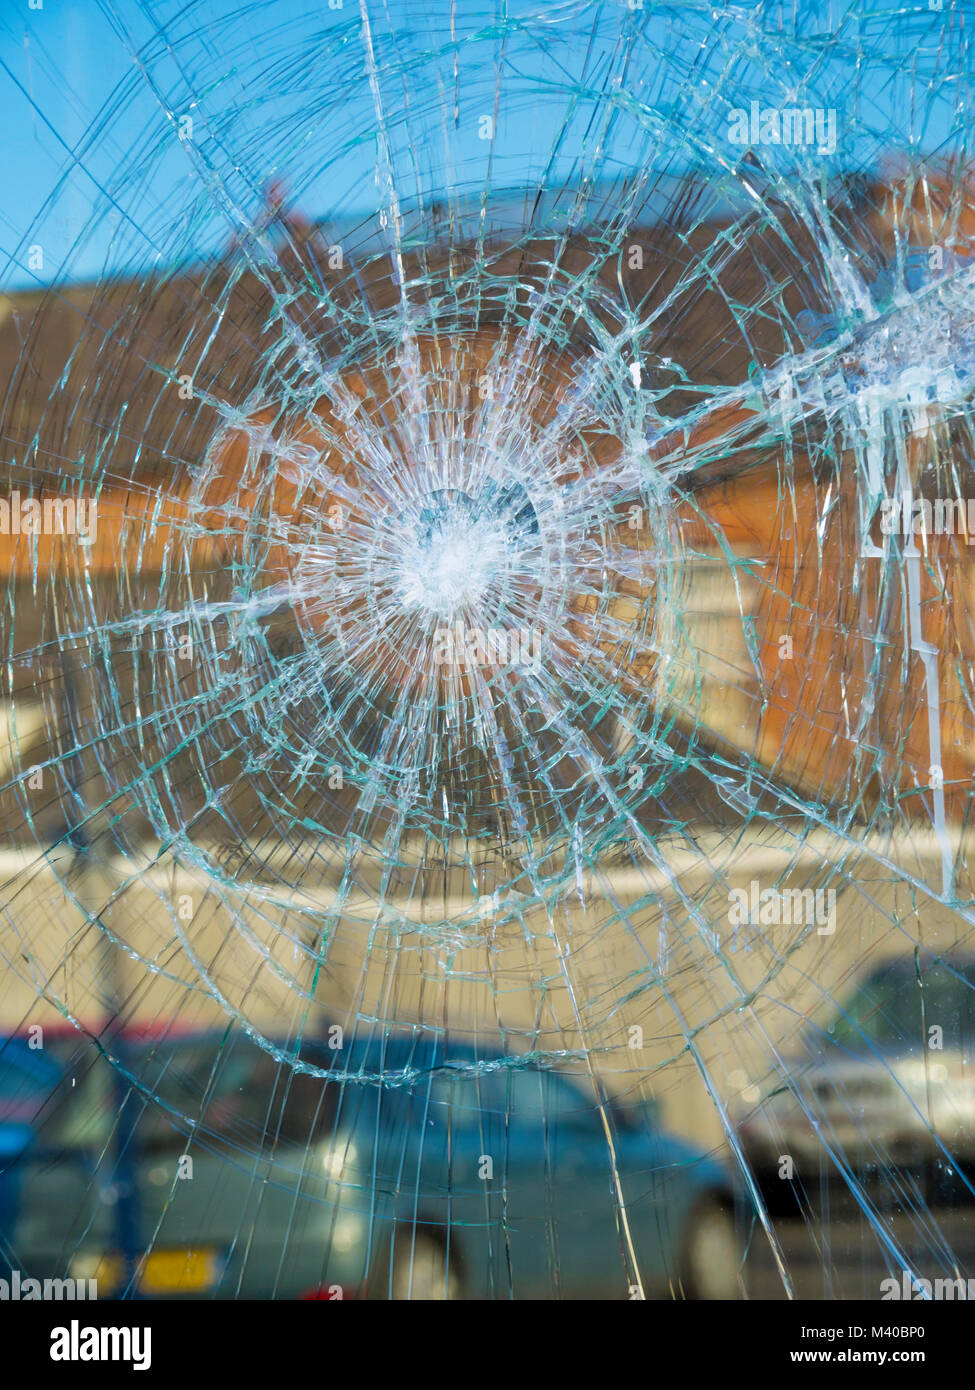 Dommages criminels une vitrine brisée par des vandales Banque D'Images